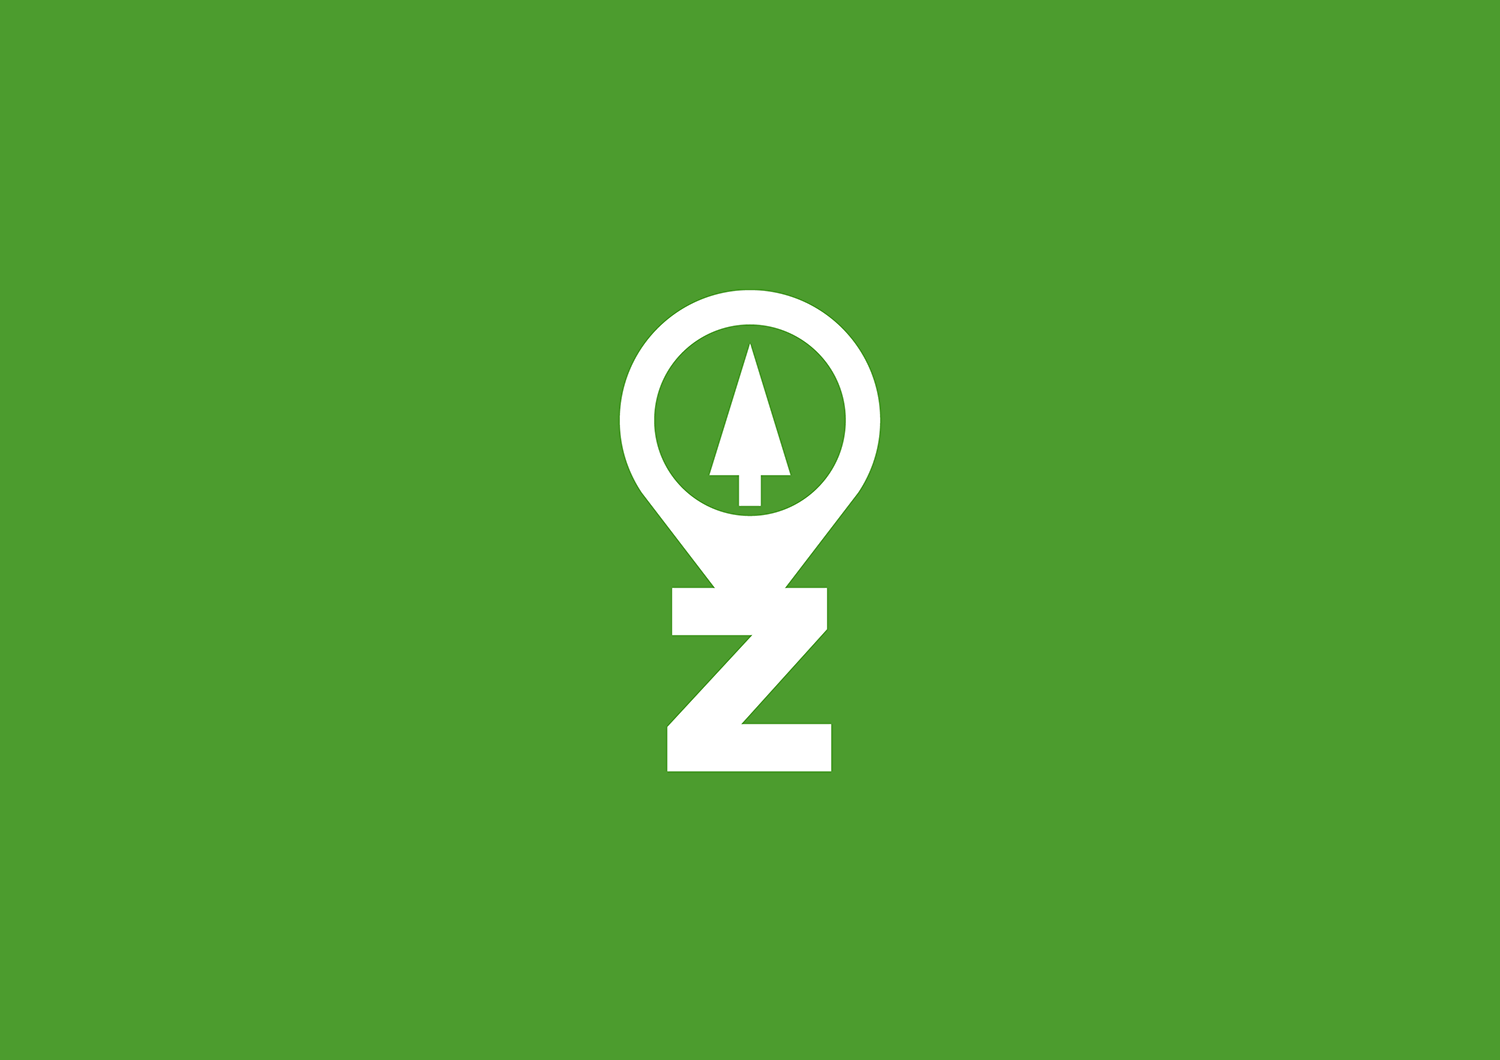 Vytvorili sme logo pre novovzniknutú nadáciu v Žiline